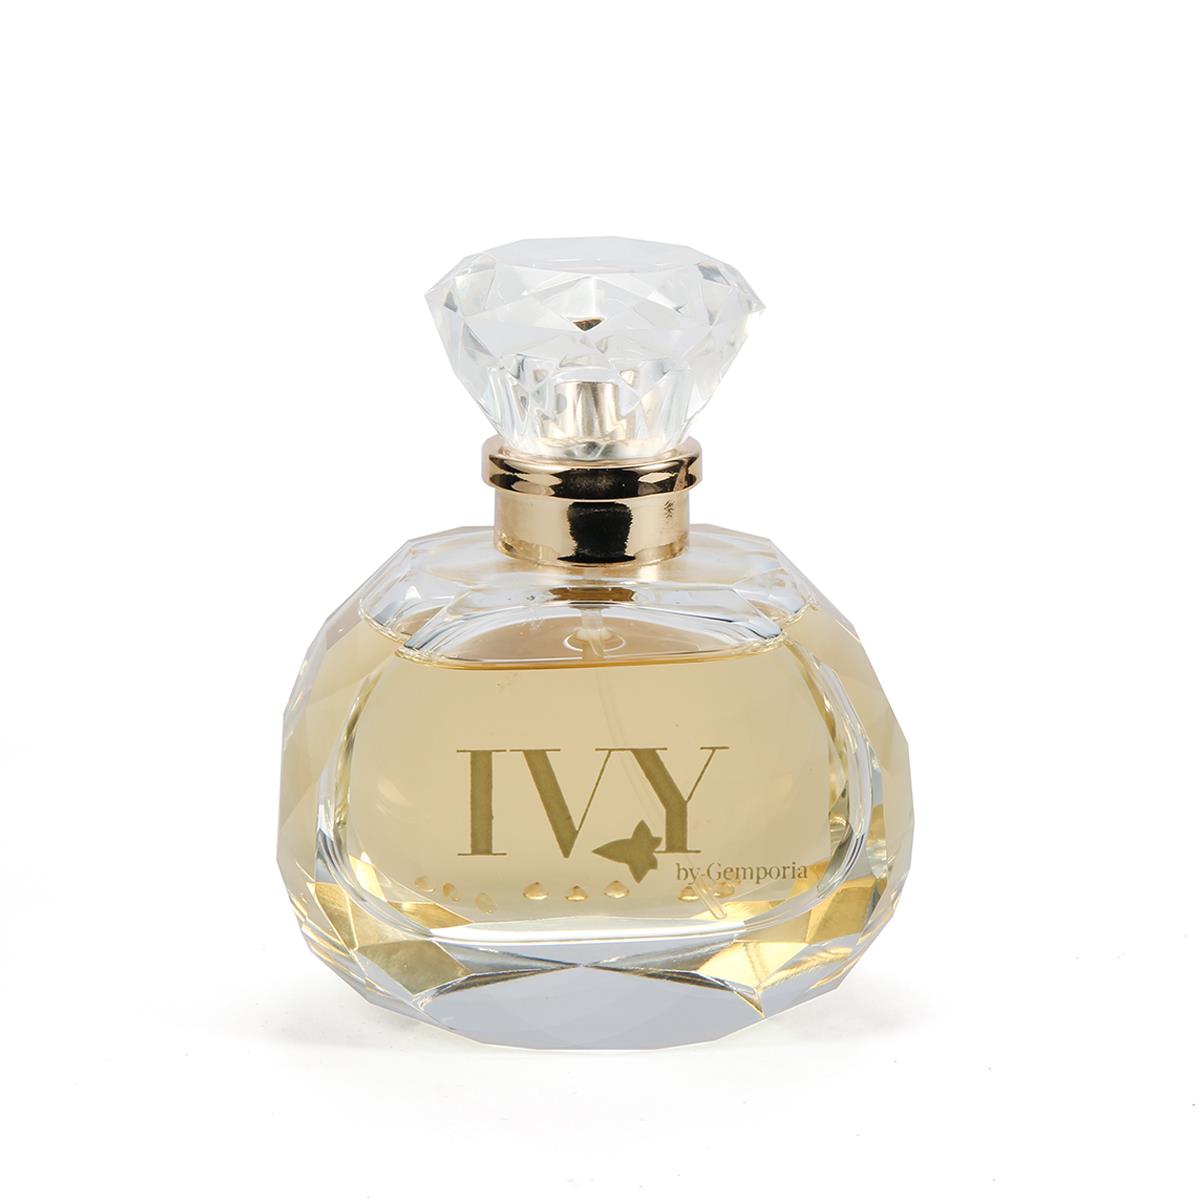 Ivy Eau de Parfum - 60ml with Citrine ATGW 1ct